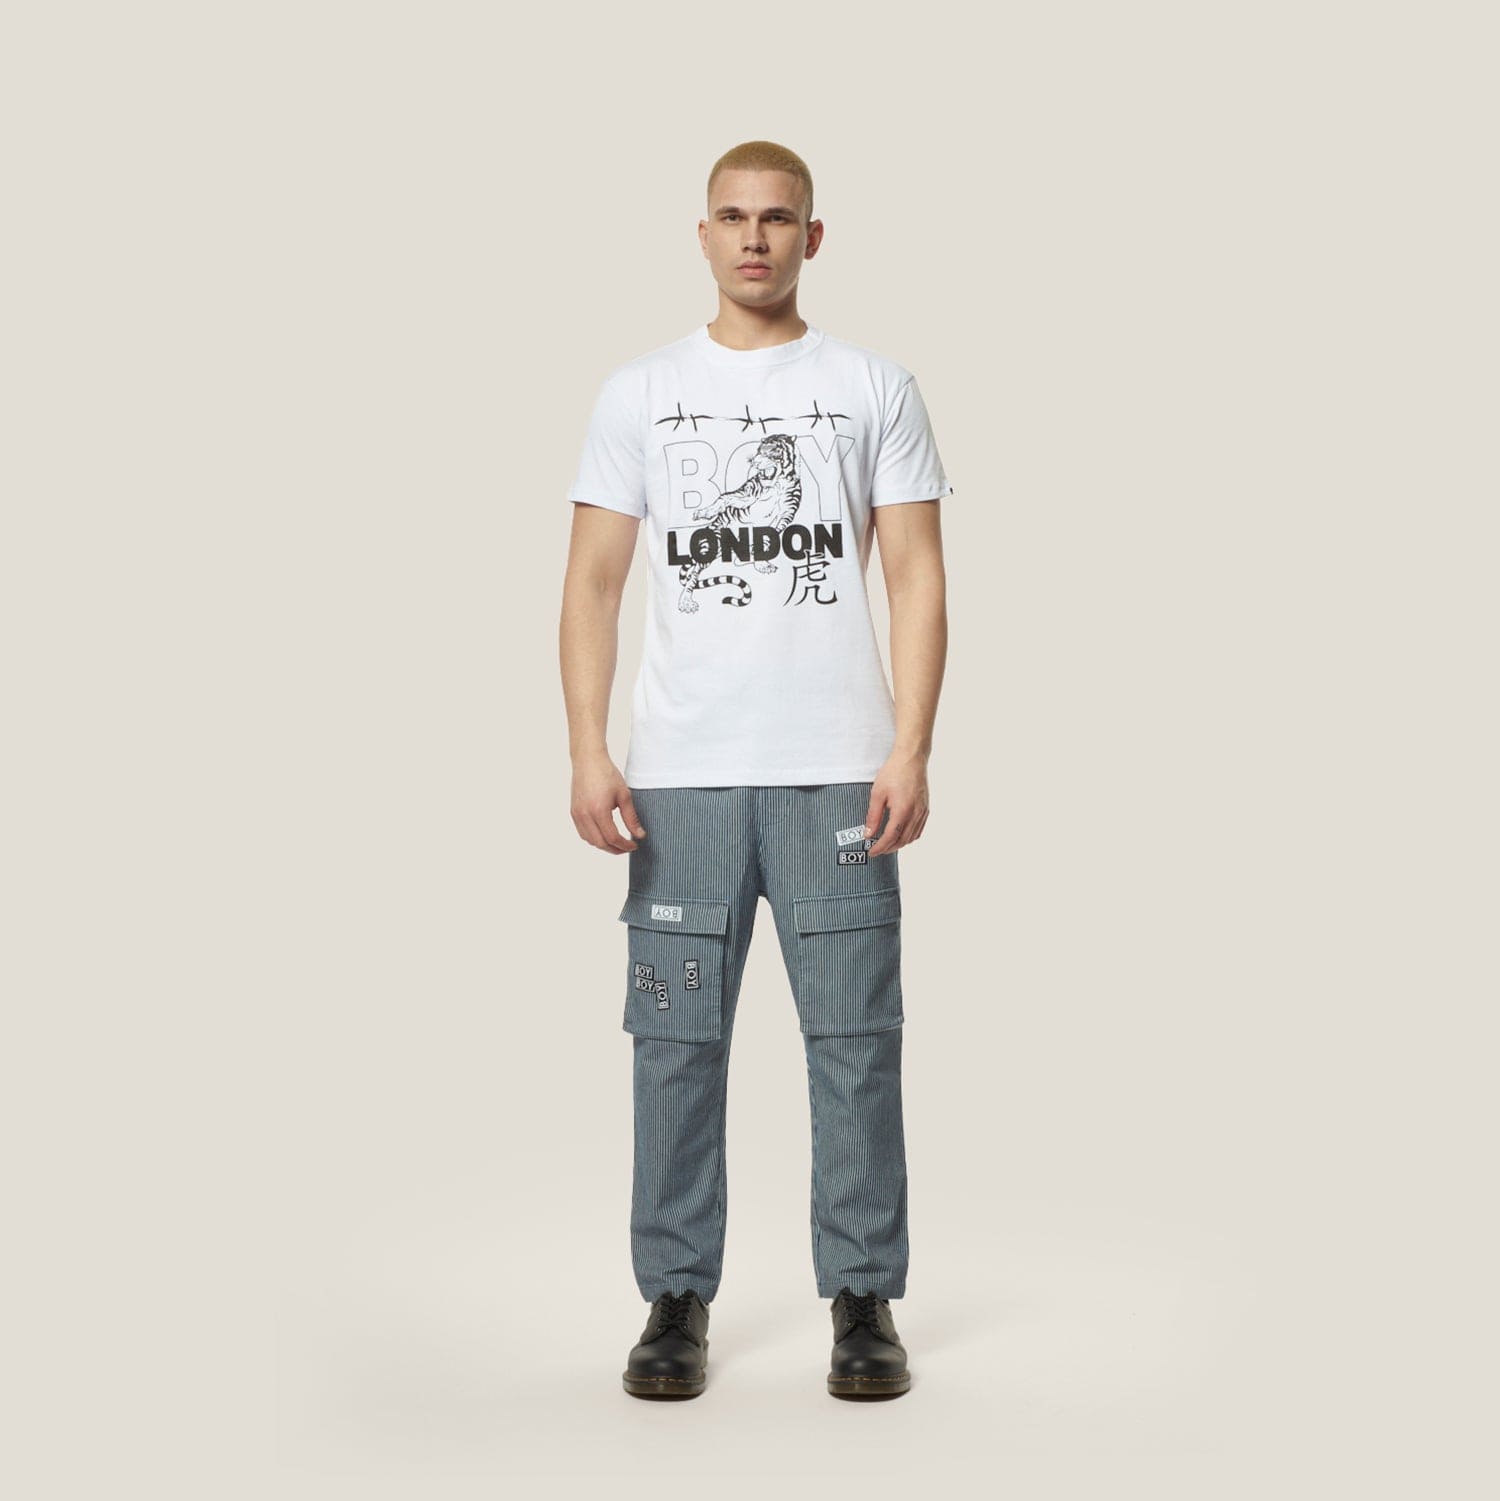 Unisex T-Shirts - Online Buying Printed Unisex T-Shirts - BOY London